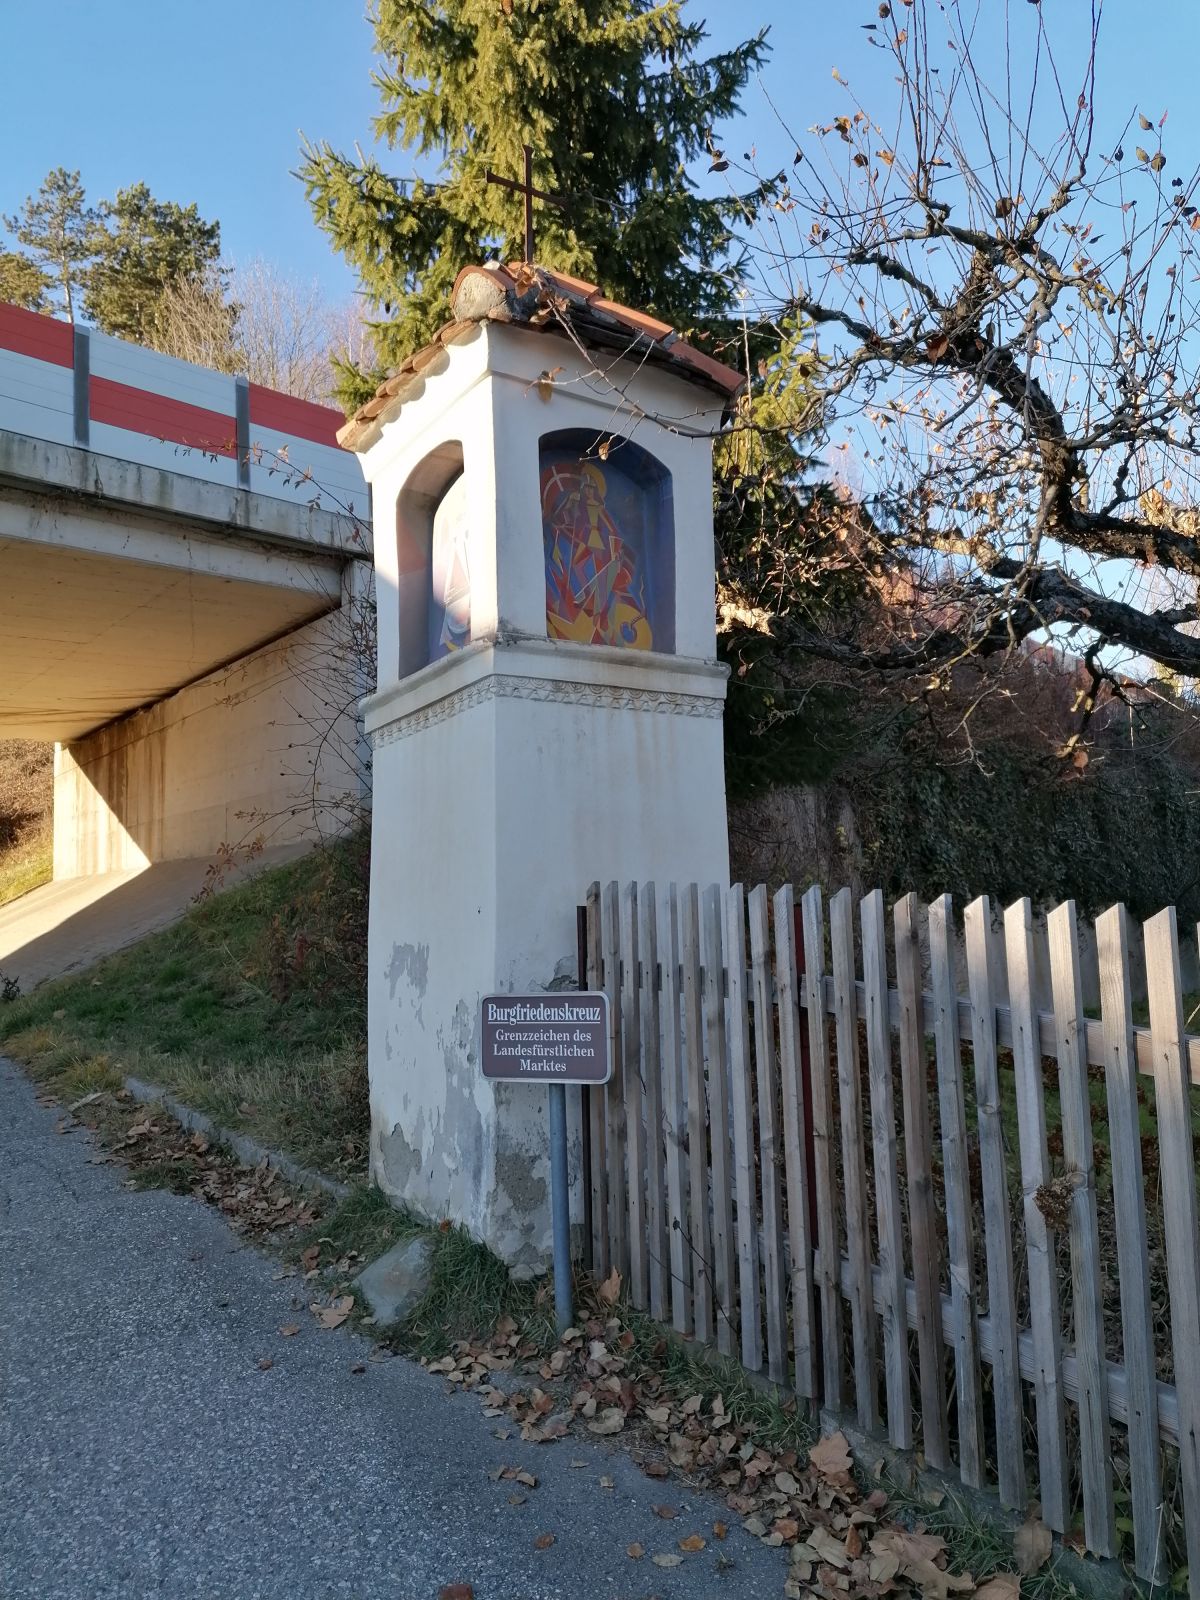 Burgfriedenskreuz